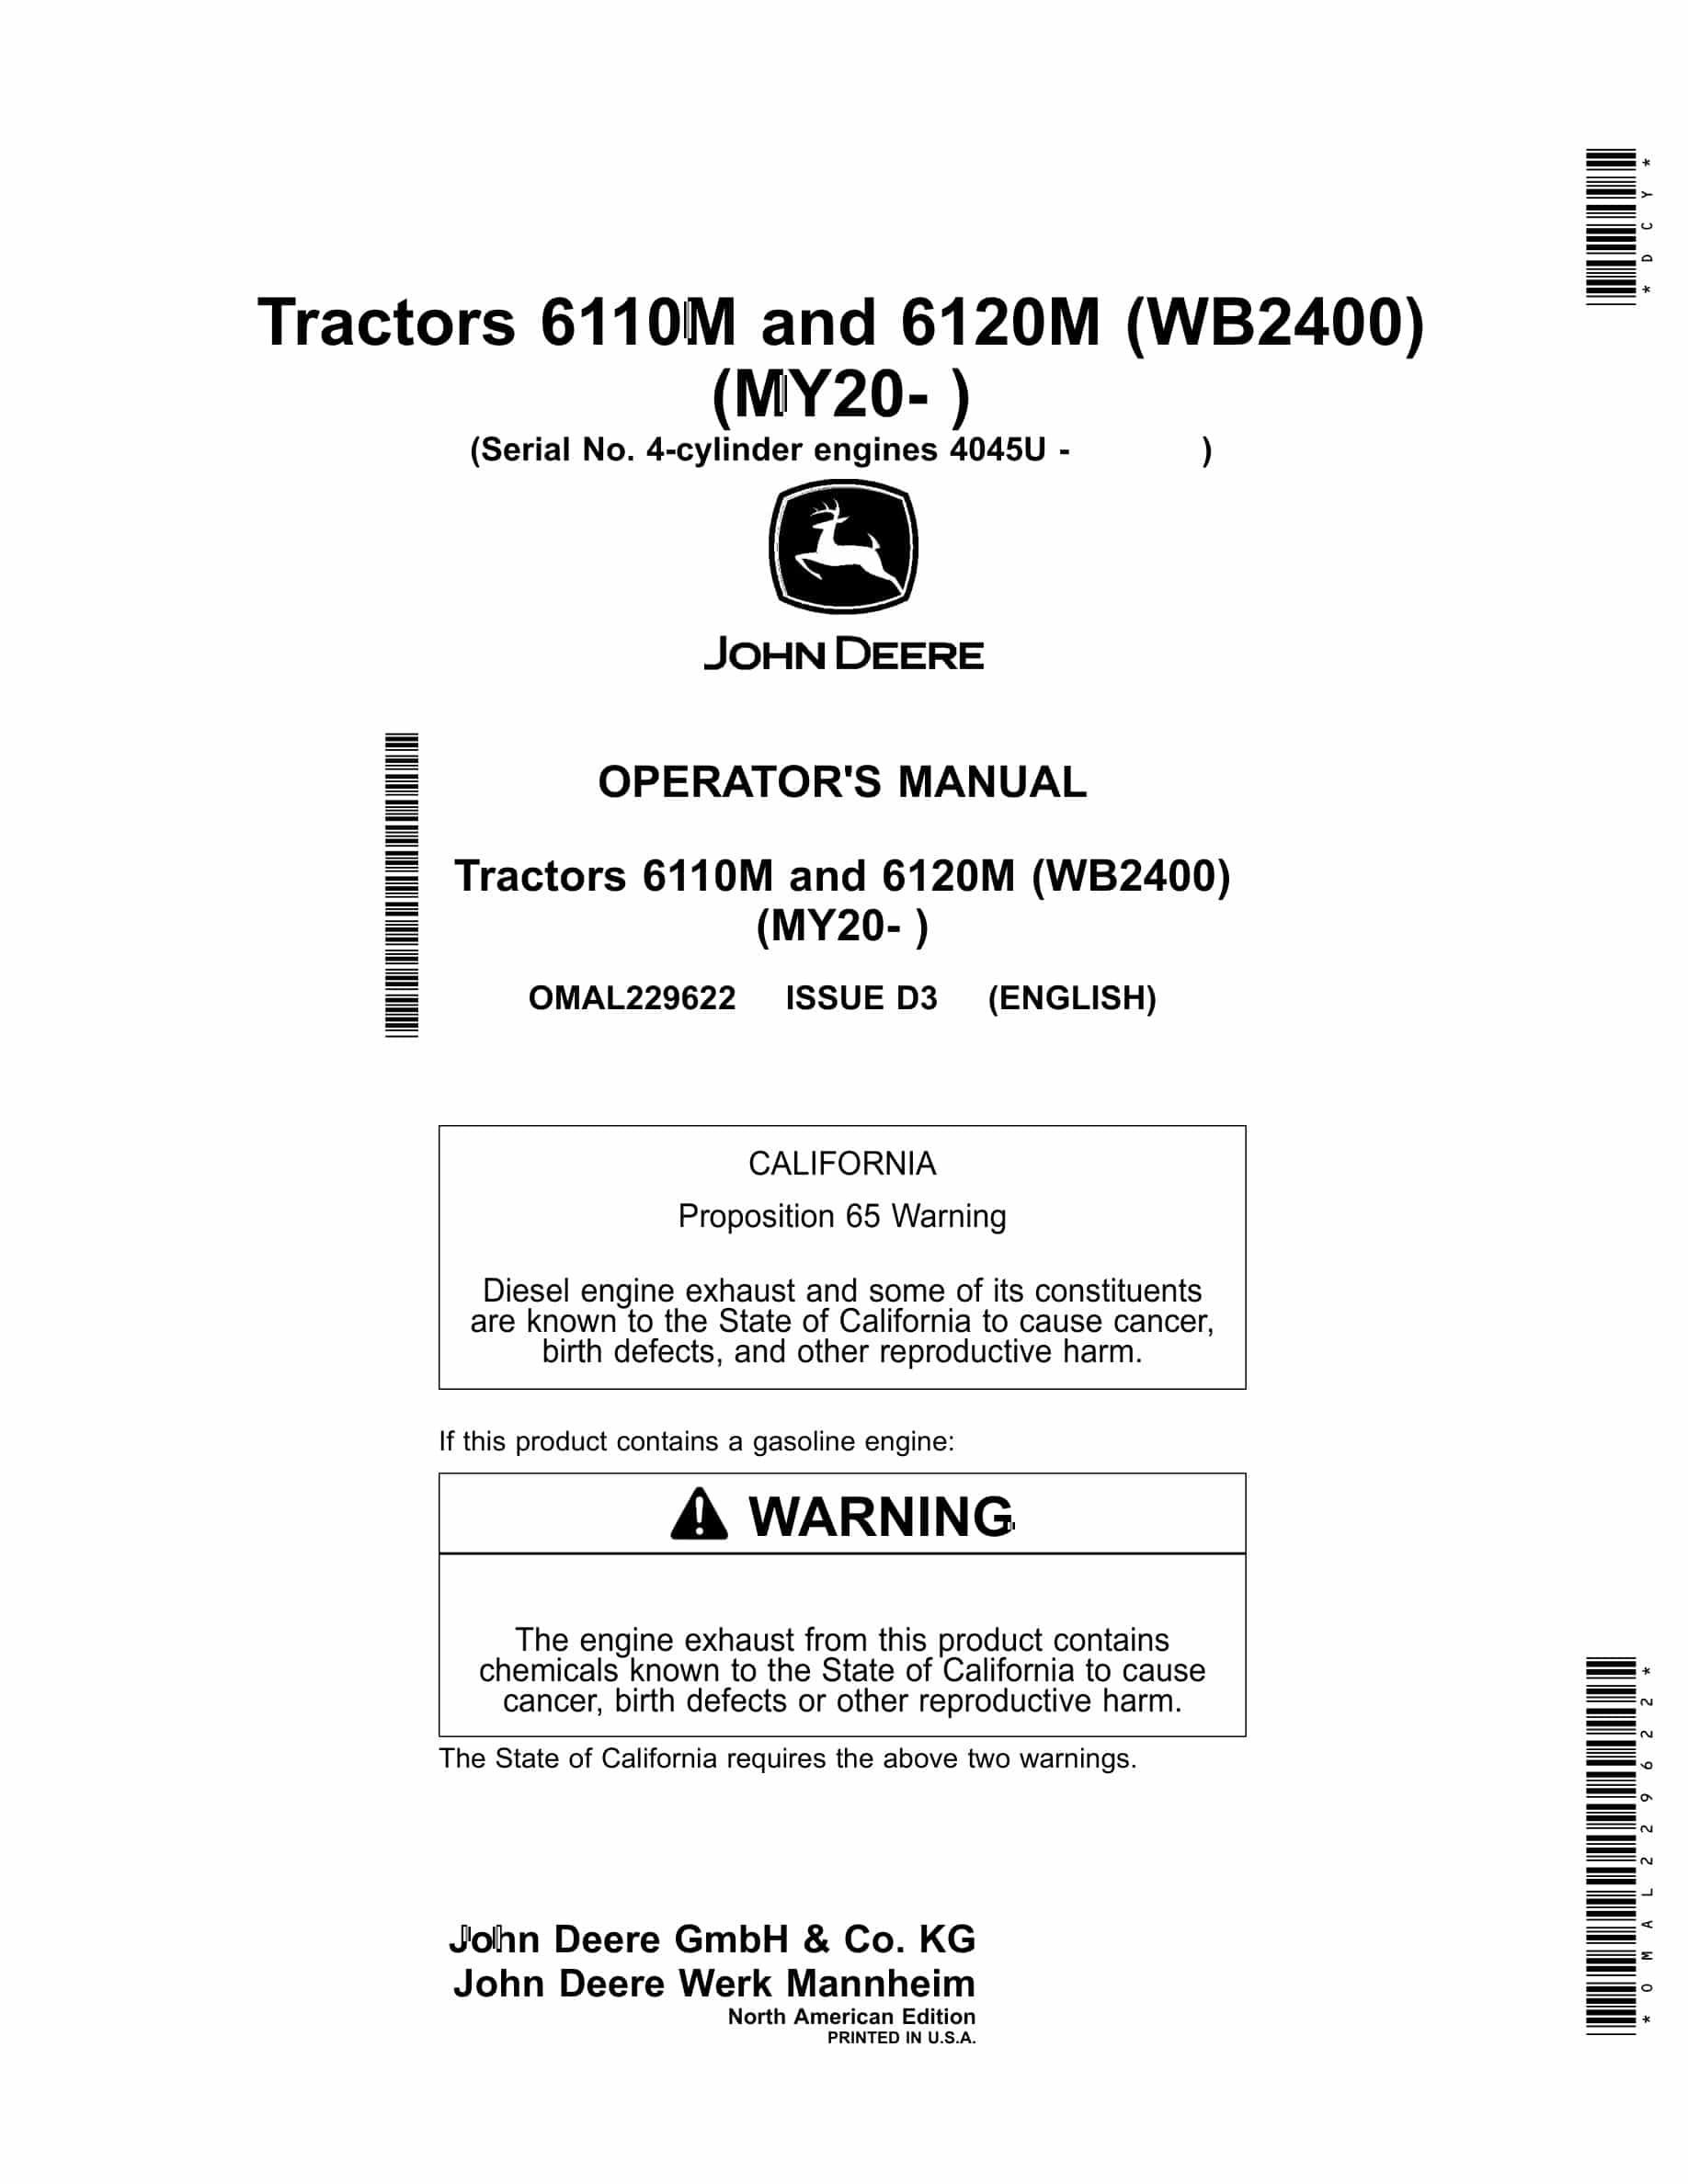 John Deere 6110m And 6120m Tractors Operator Manuals (my20- ) OMAL229622-1